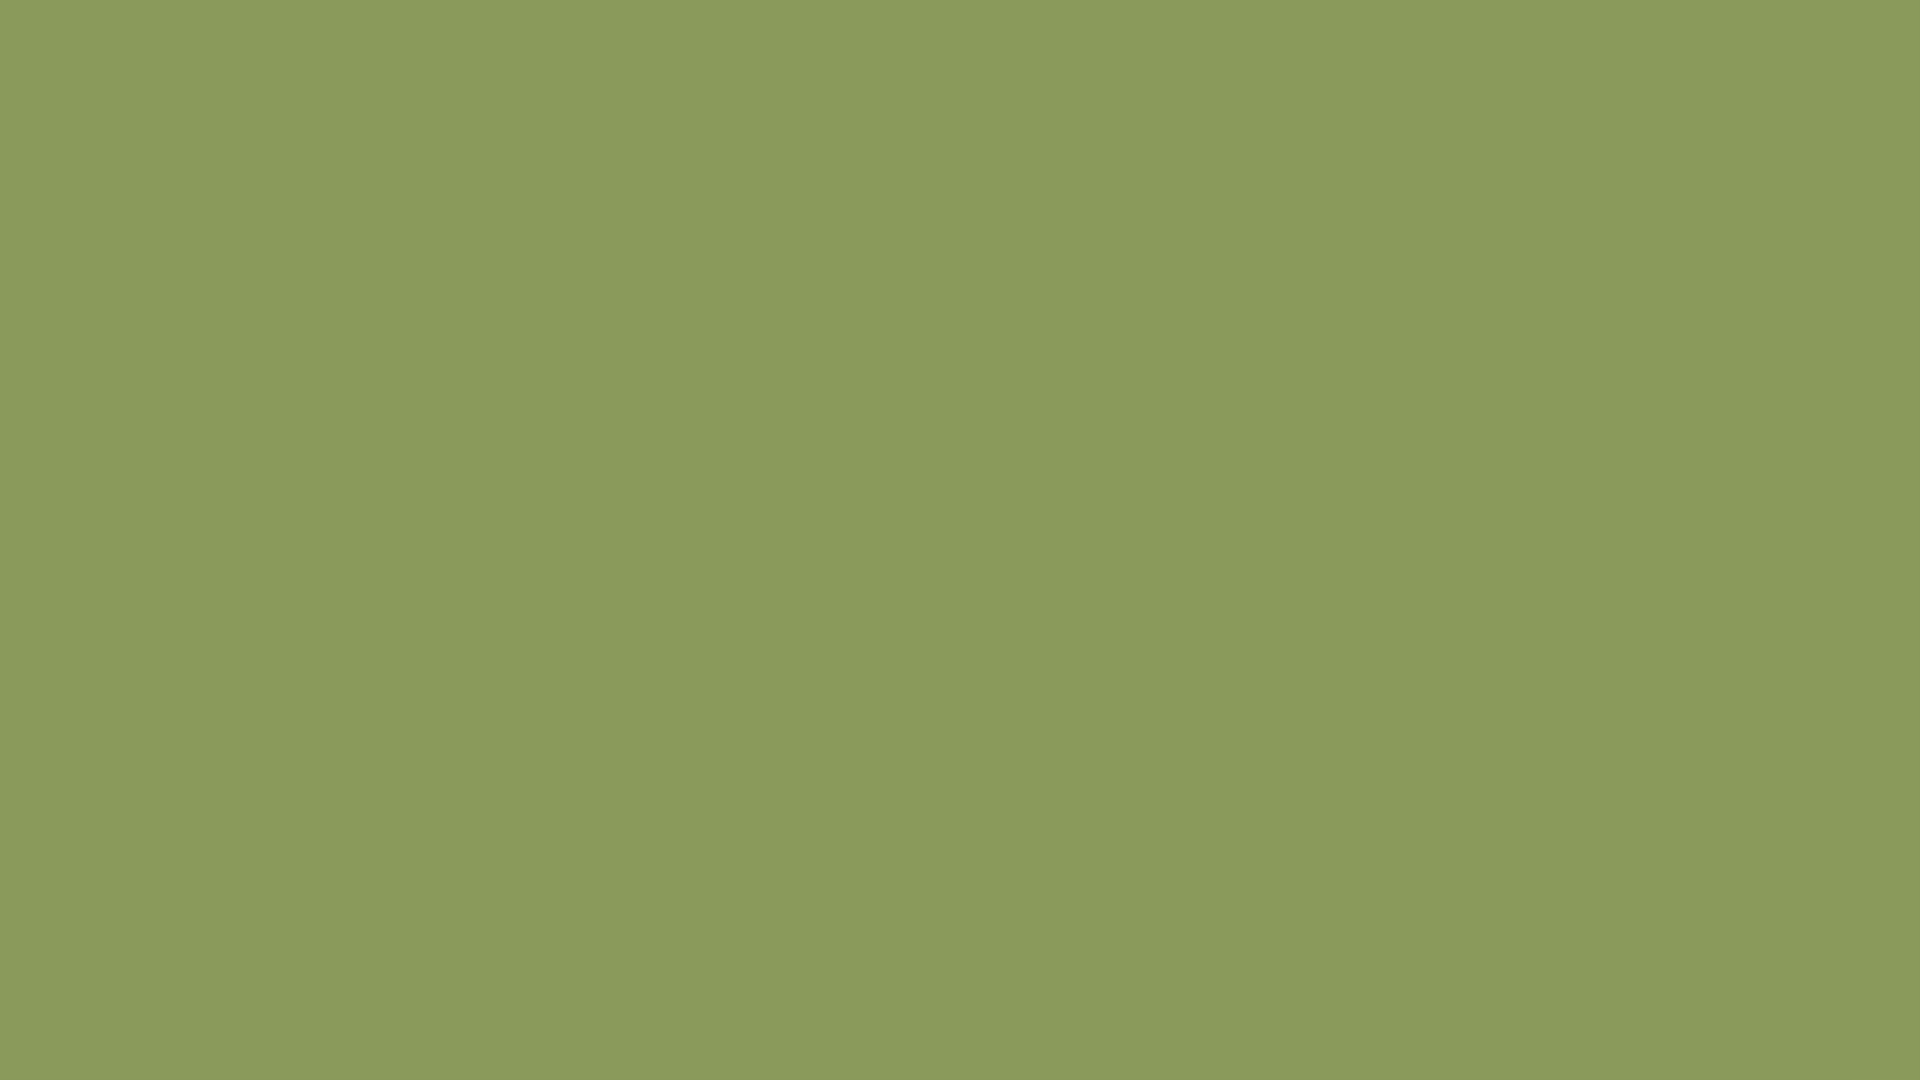 Màu xanh lá cây rêu là một sắc thái tuyệt đẹp của màu xanh, đem đến sự mát mắt và thư thái cho tâm hồn. Hãy khám phá những hình ảnh liên quan đến màu xanh lá cây rêu để cảm nhận được sự tuyệt vời của màu sắc này.